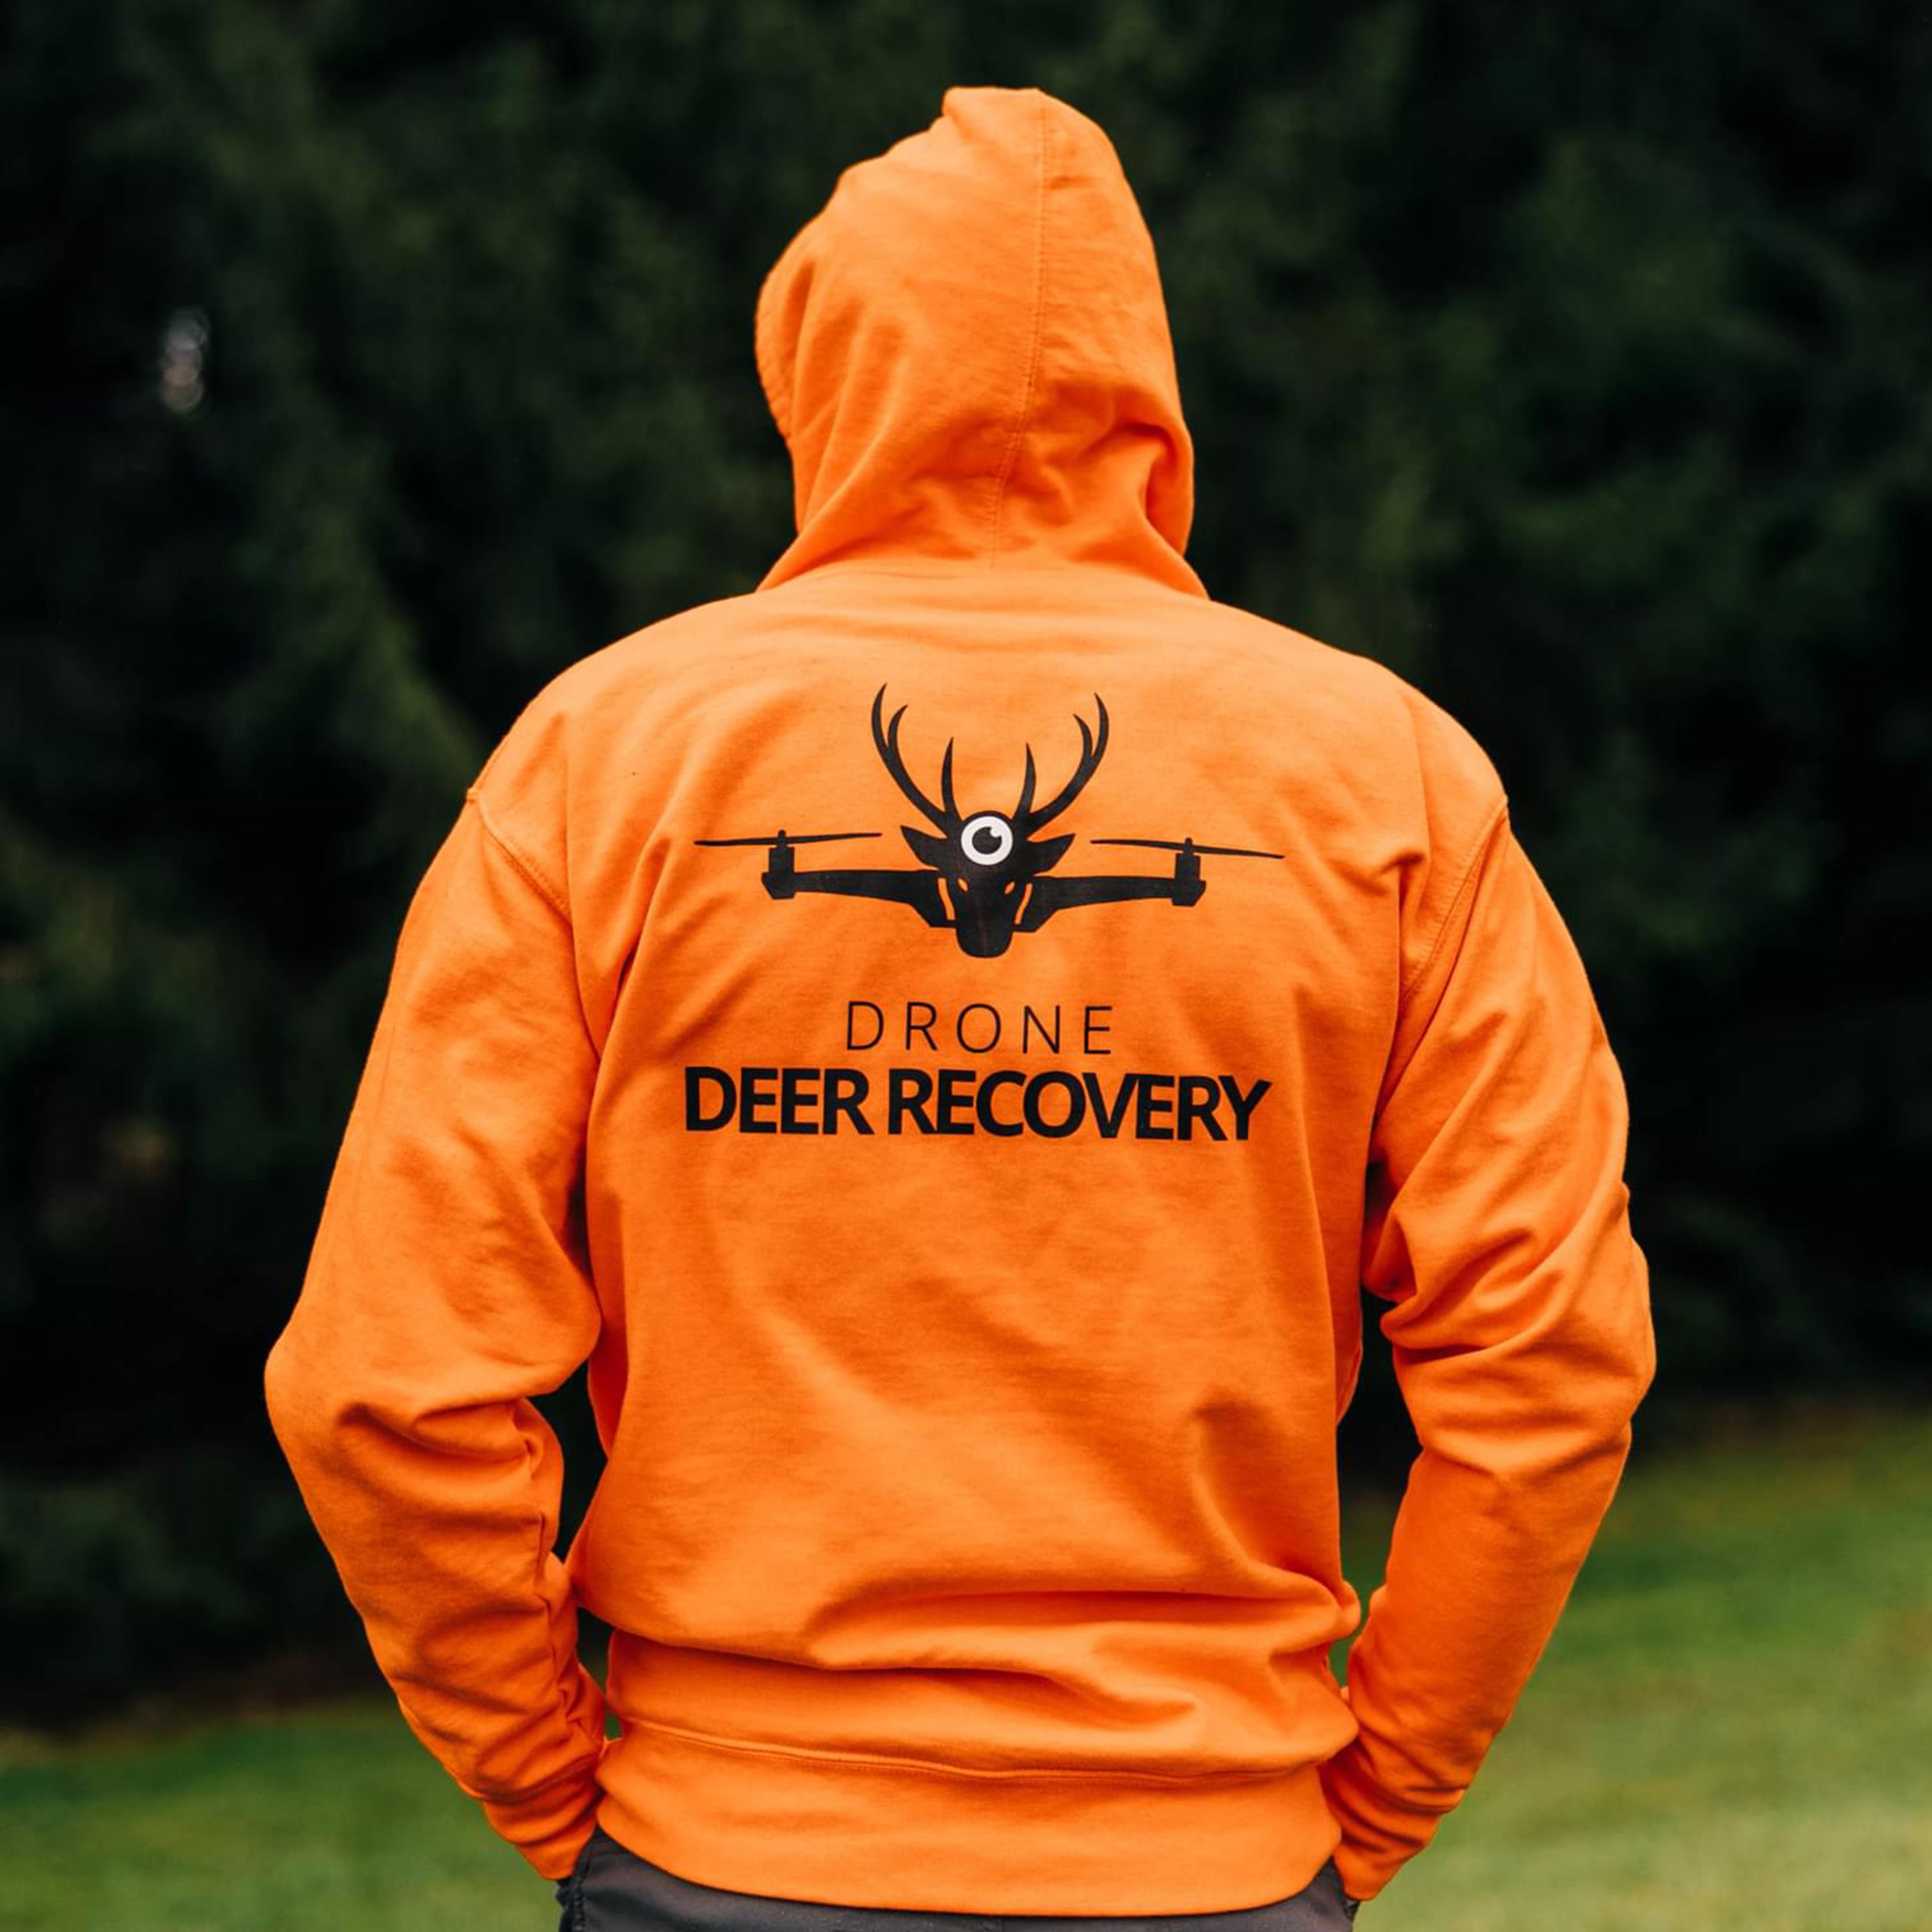 The Original Drone Deer Recovery Hoodie